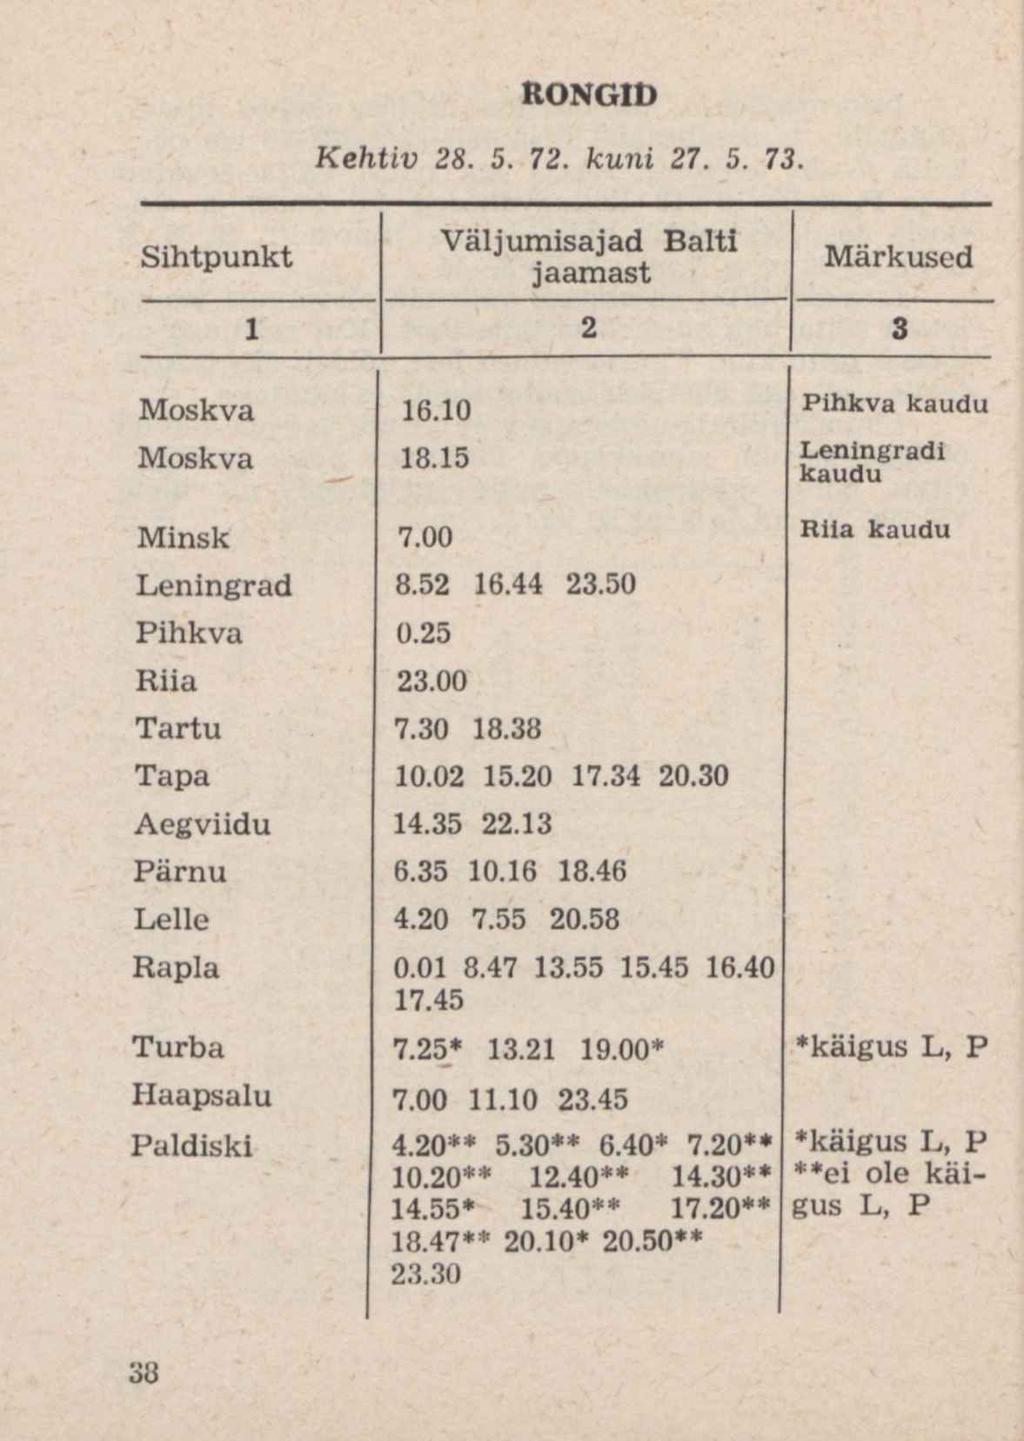 Sihtpunkt RONGID Kehtiv 28. 5. 72. kuni 27. 5. 73. Väljumisajad Balti jaamast Märkused 1 2 3 Moskva 16.10 Pihkva kaudu Moskva 18.15 Leningradi kaudu Minsk 7.00 Riia kaudu Leningrad 8.52 16.44 23.